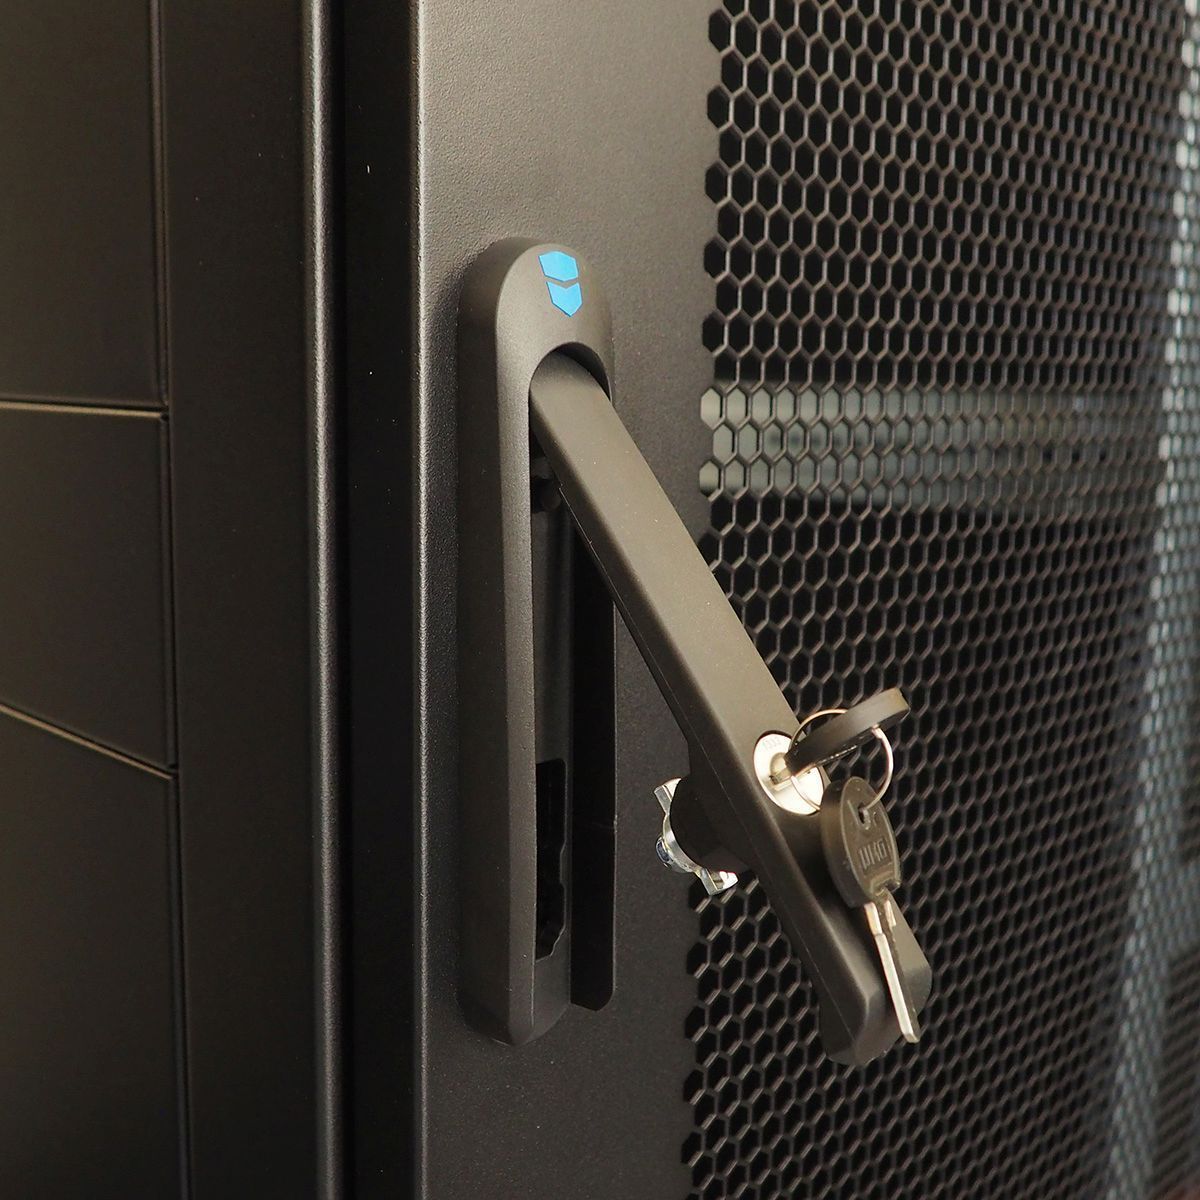 Шкаф серверный напольный 42U (800 × 1000) дверь перфорированная, задние двойные перфорированные